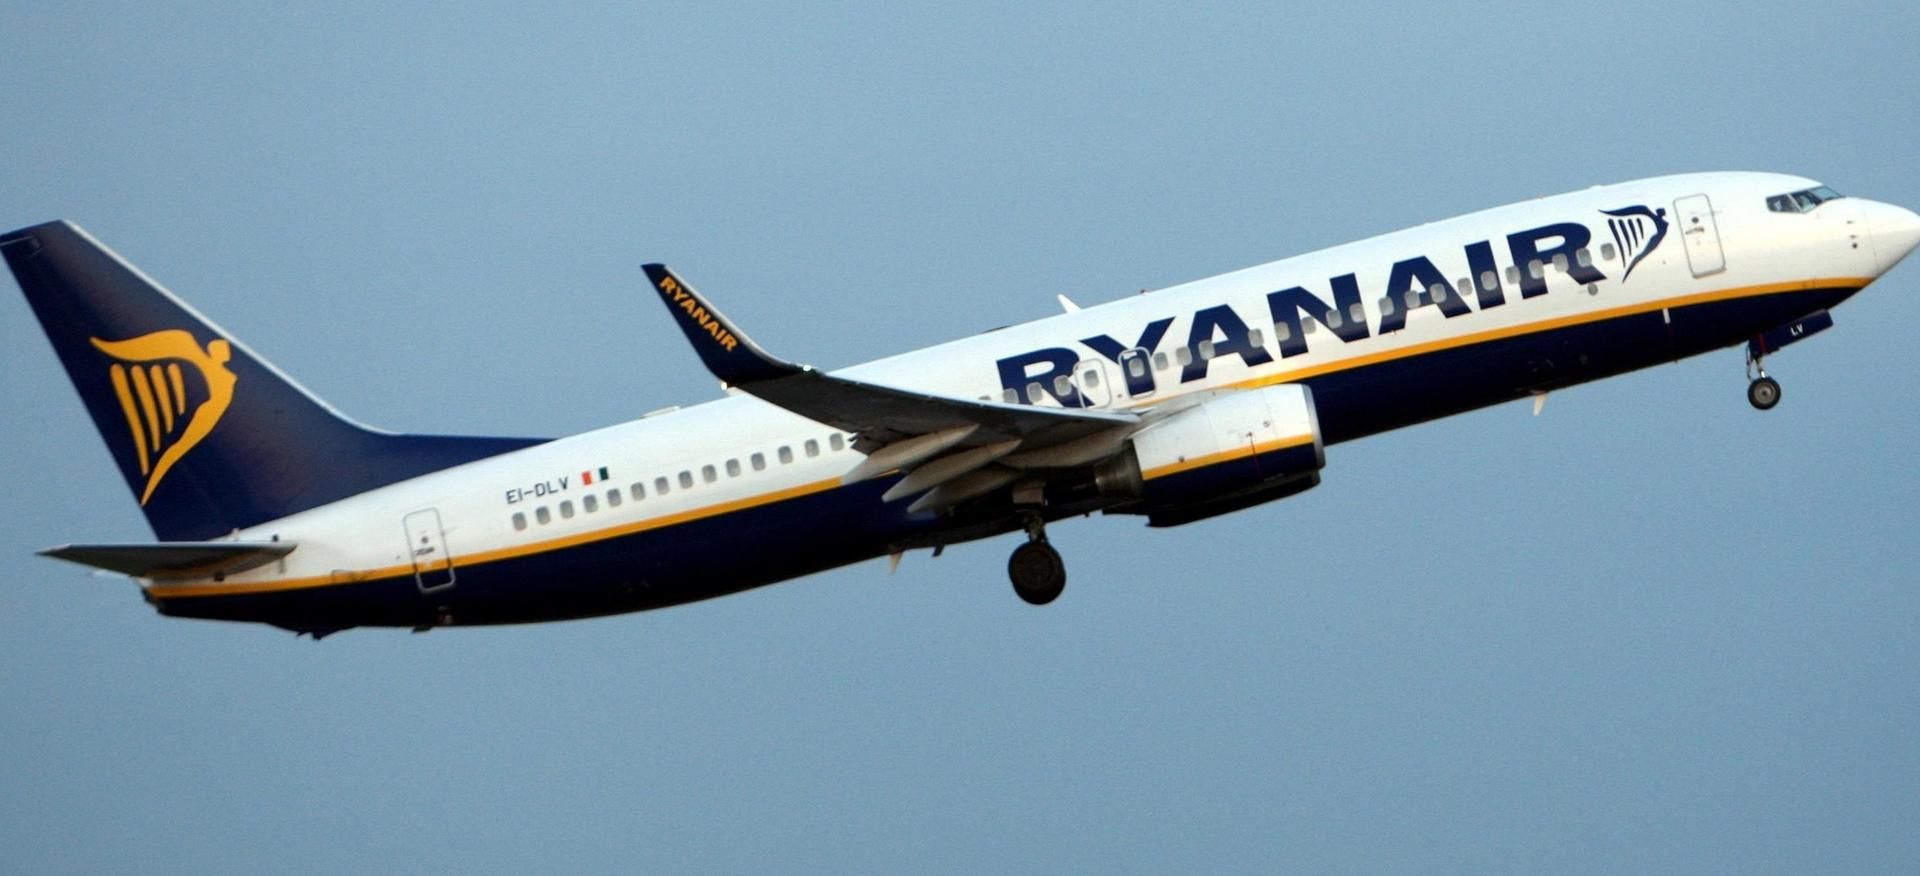 RYAN AIR recibe aprobación por parte de la Aviación civil Europea, para operar su flota de Boeing 737/800, con un solo piloto, y recibe la Certificación de “Single pilot operation”